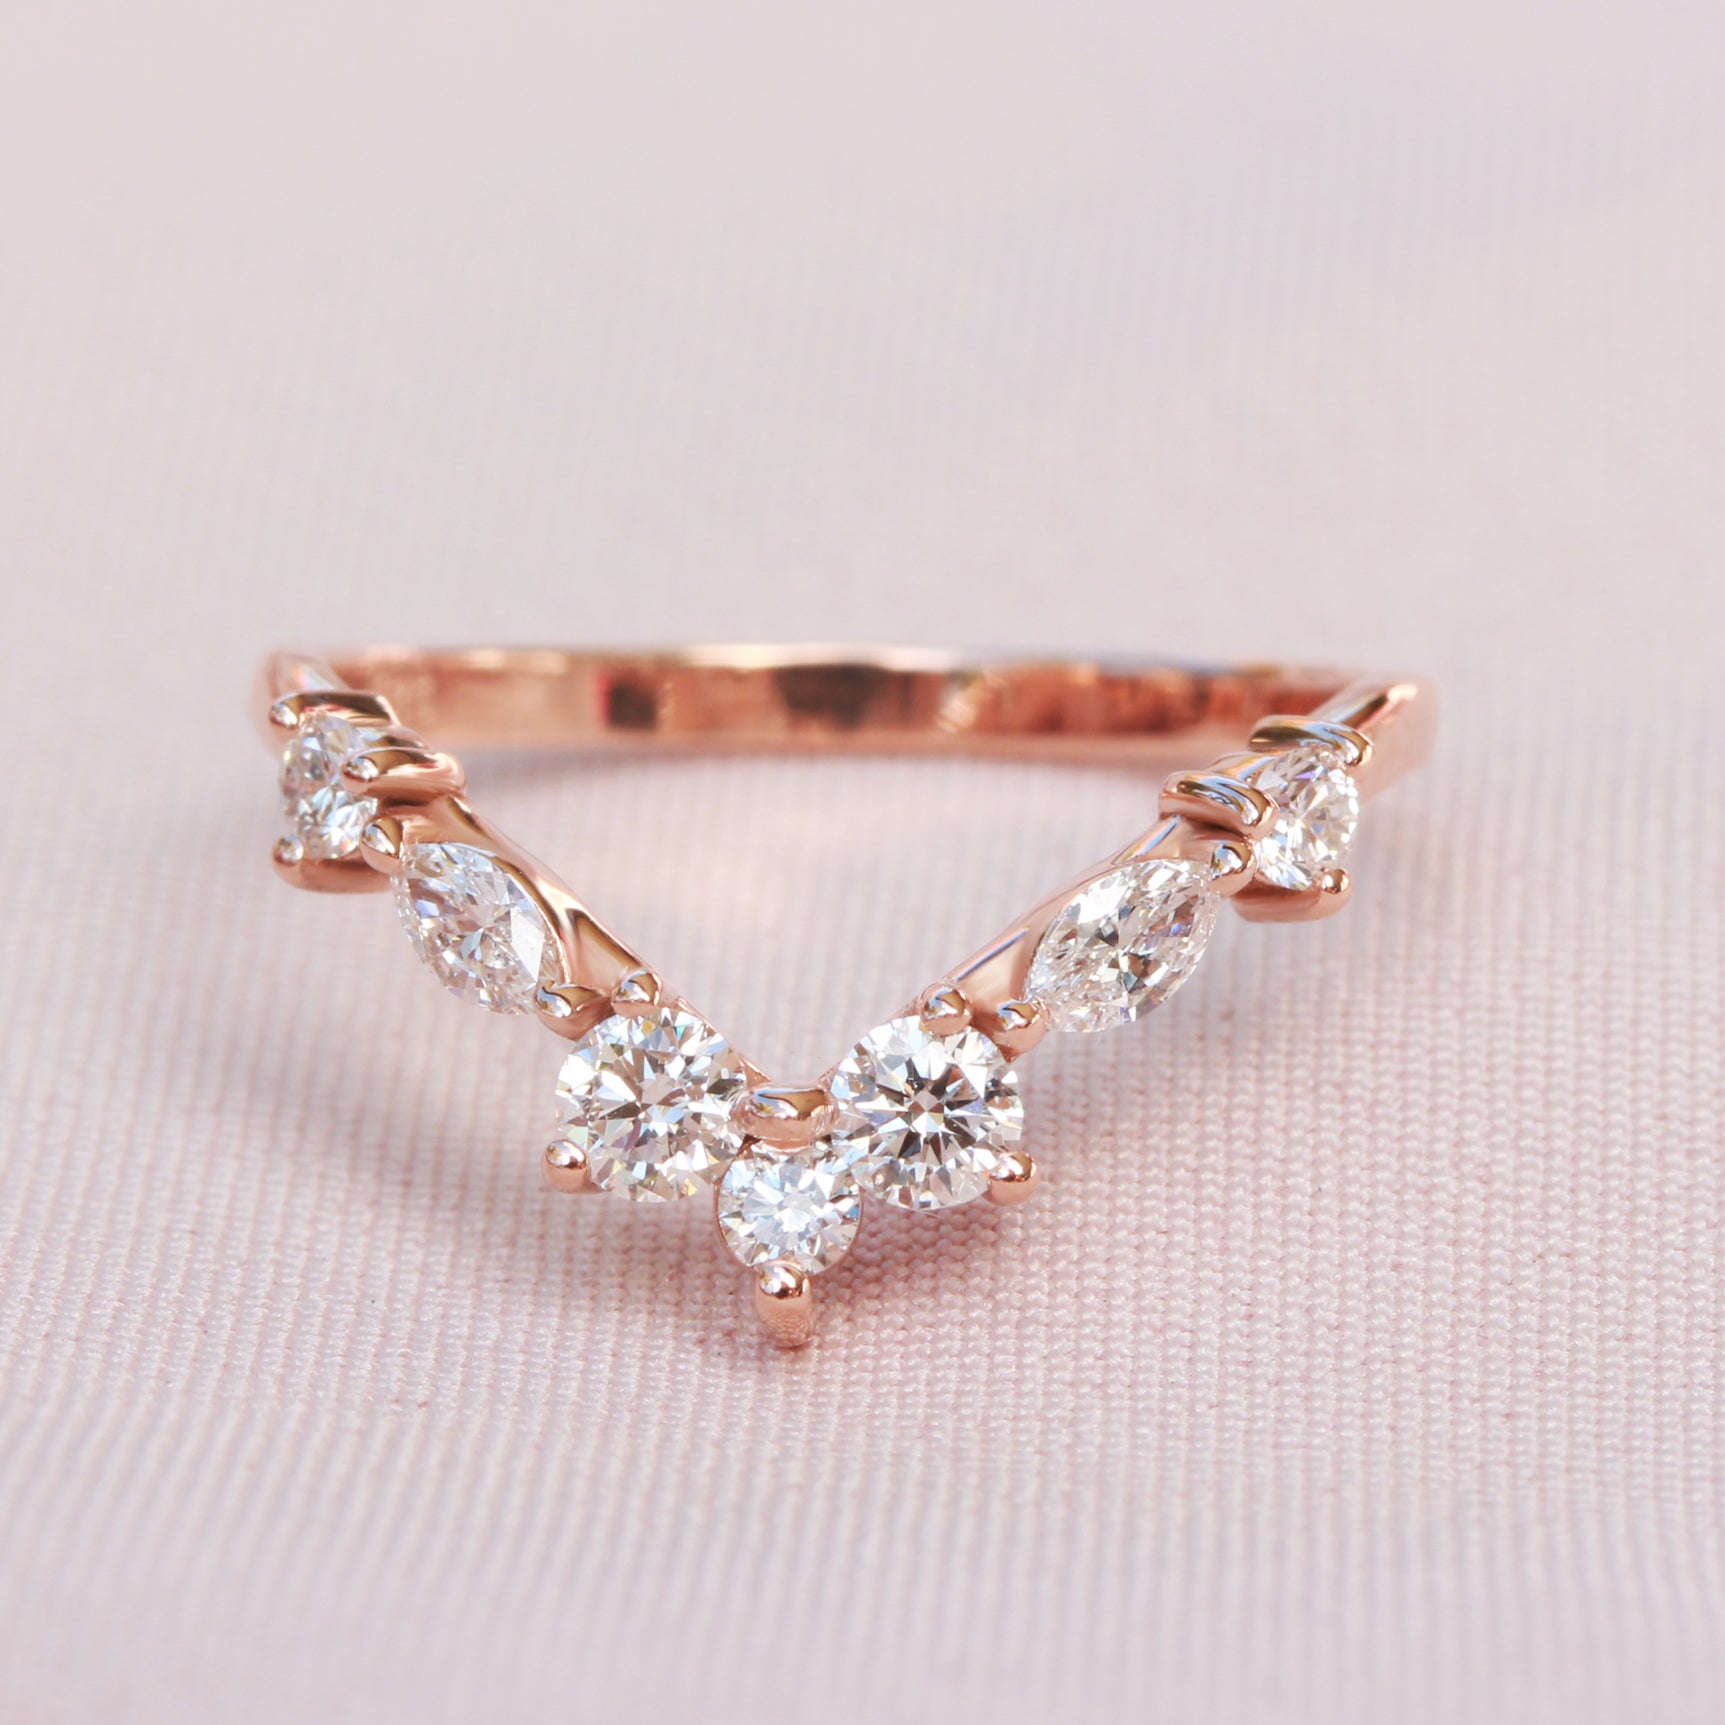 Chevron Nesting Diamond Wedding Ring - Apollo ♥